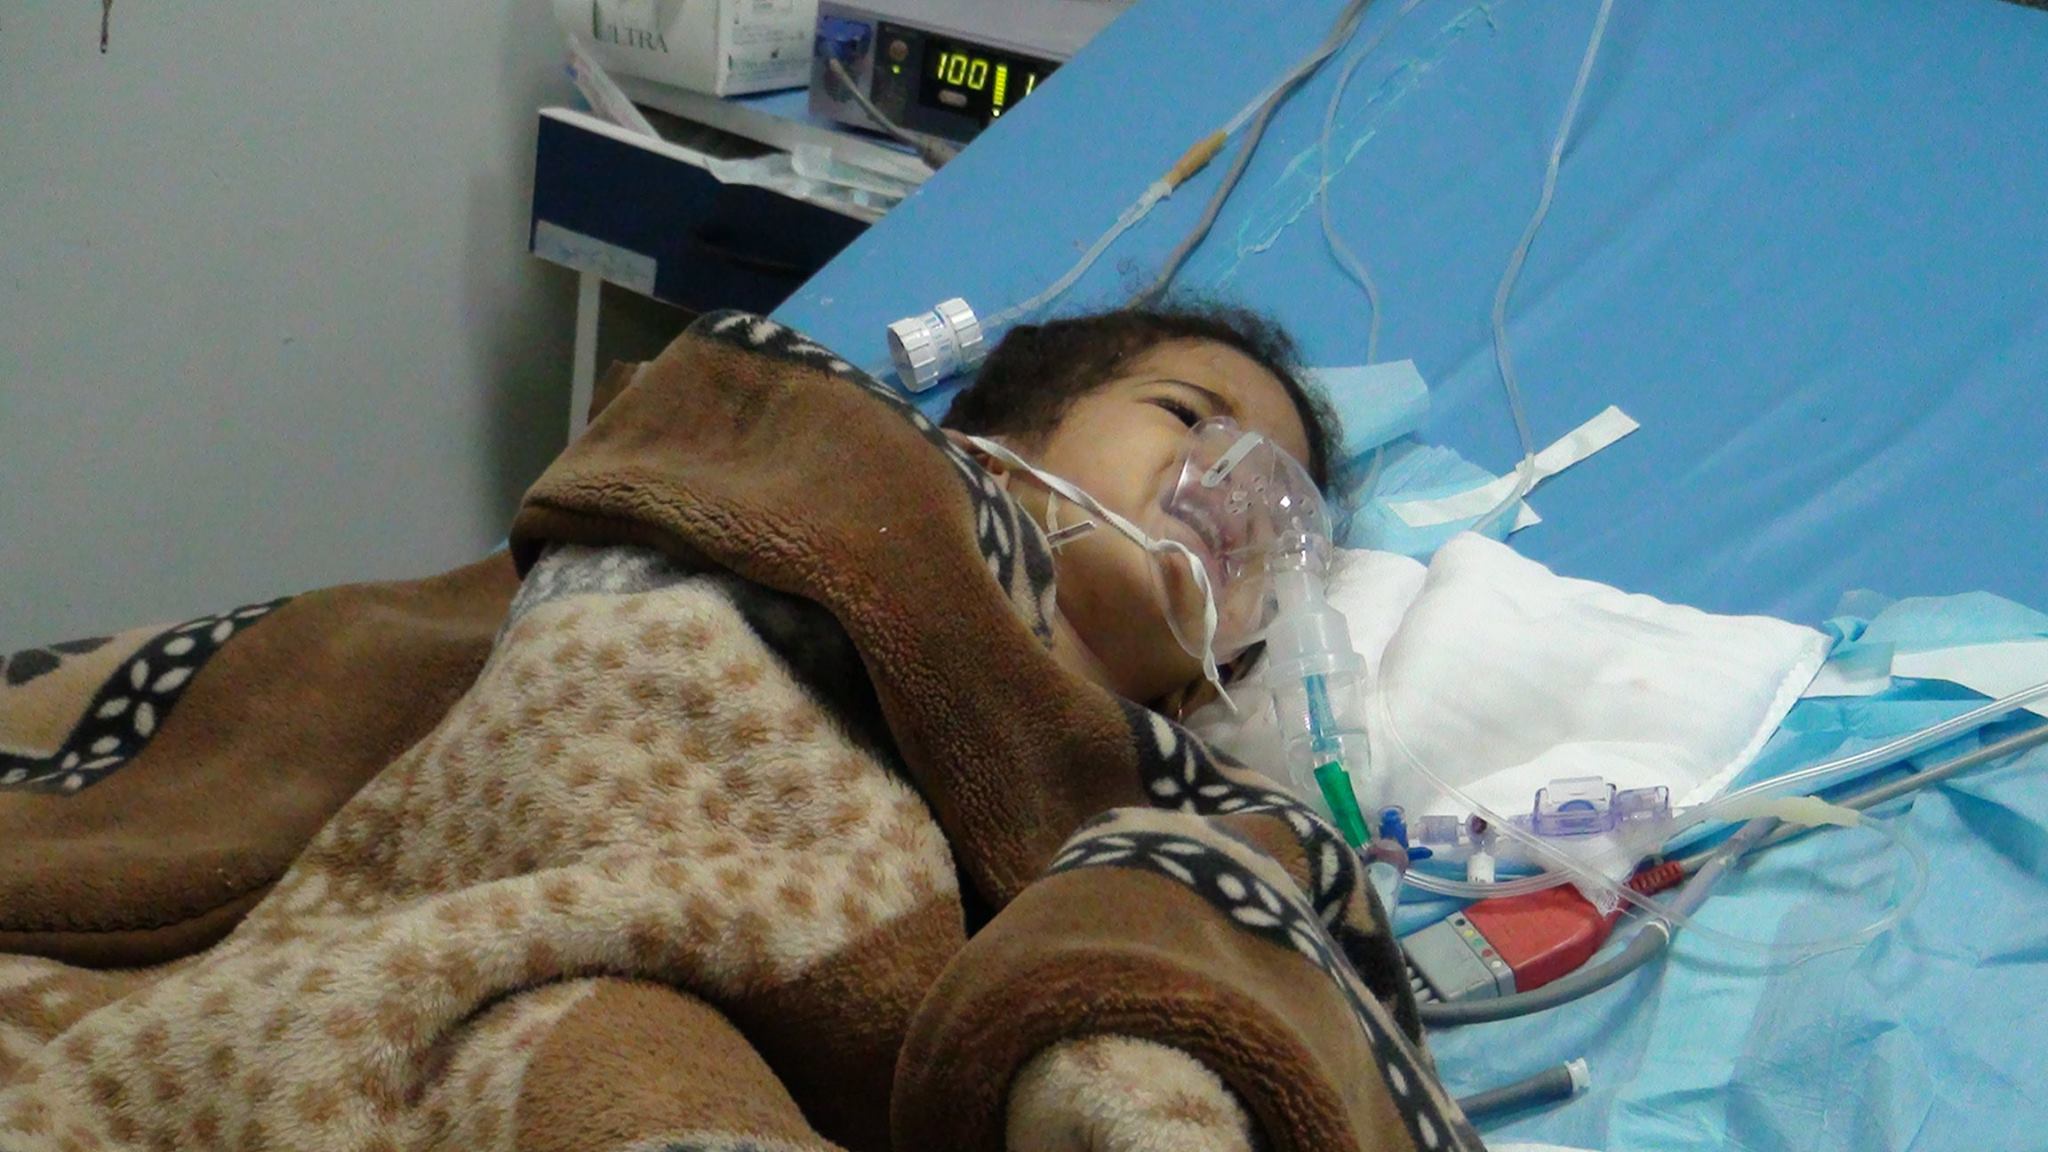 بالصور جامعي قنا تجرى 8 عمليات قلب مفتوح للأطفال مصر العربية